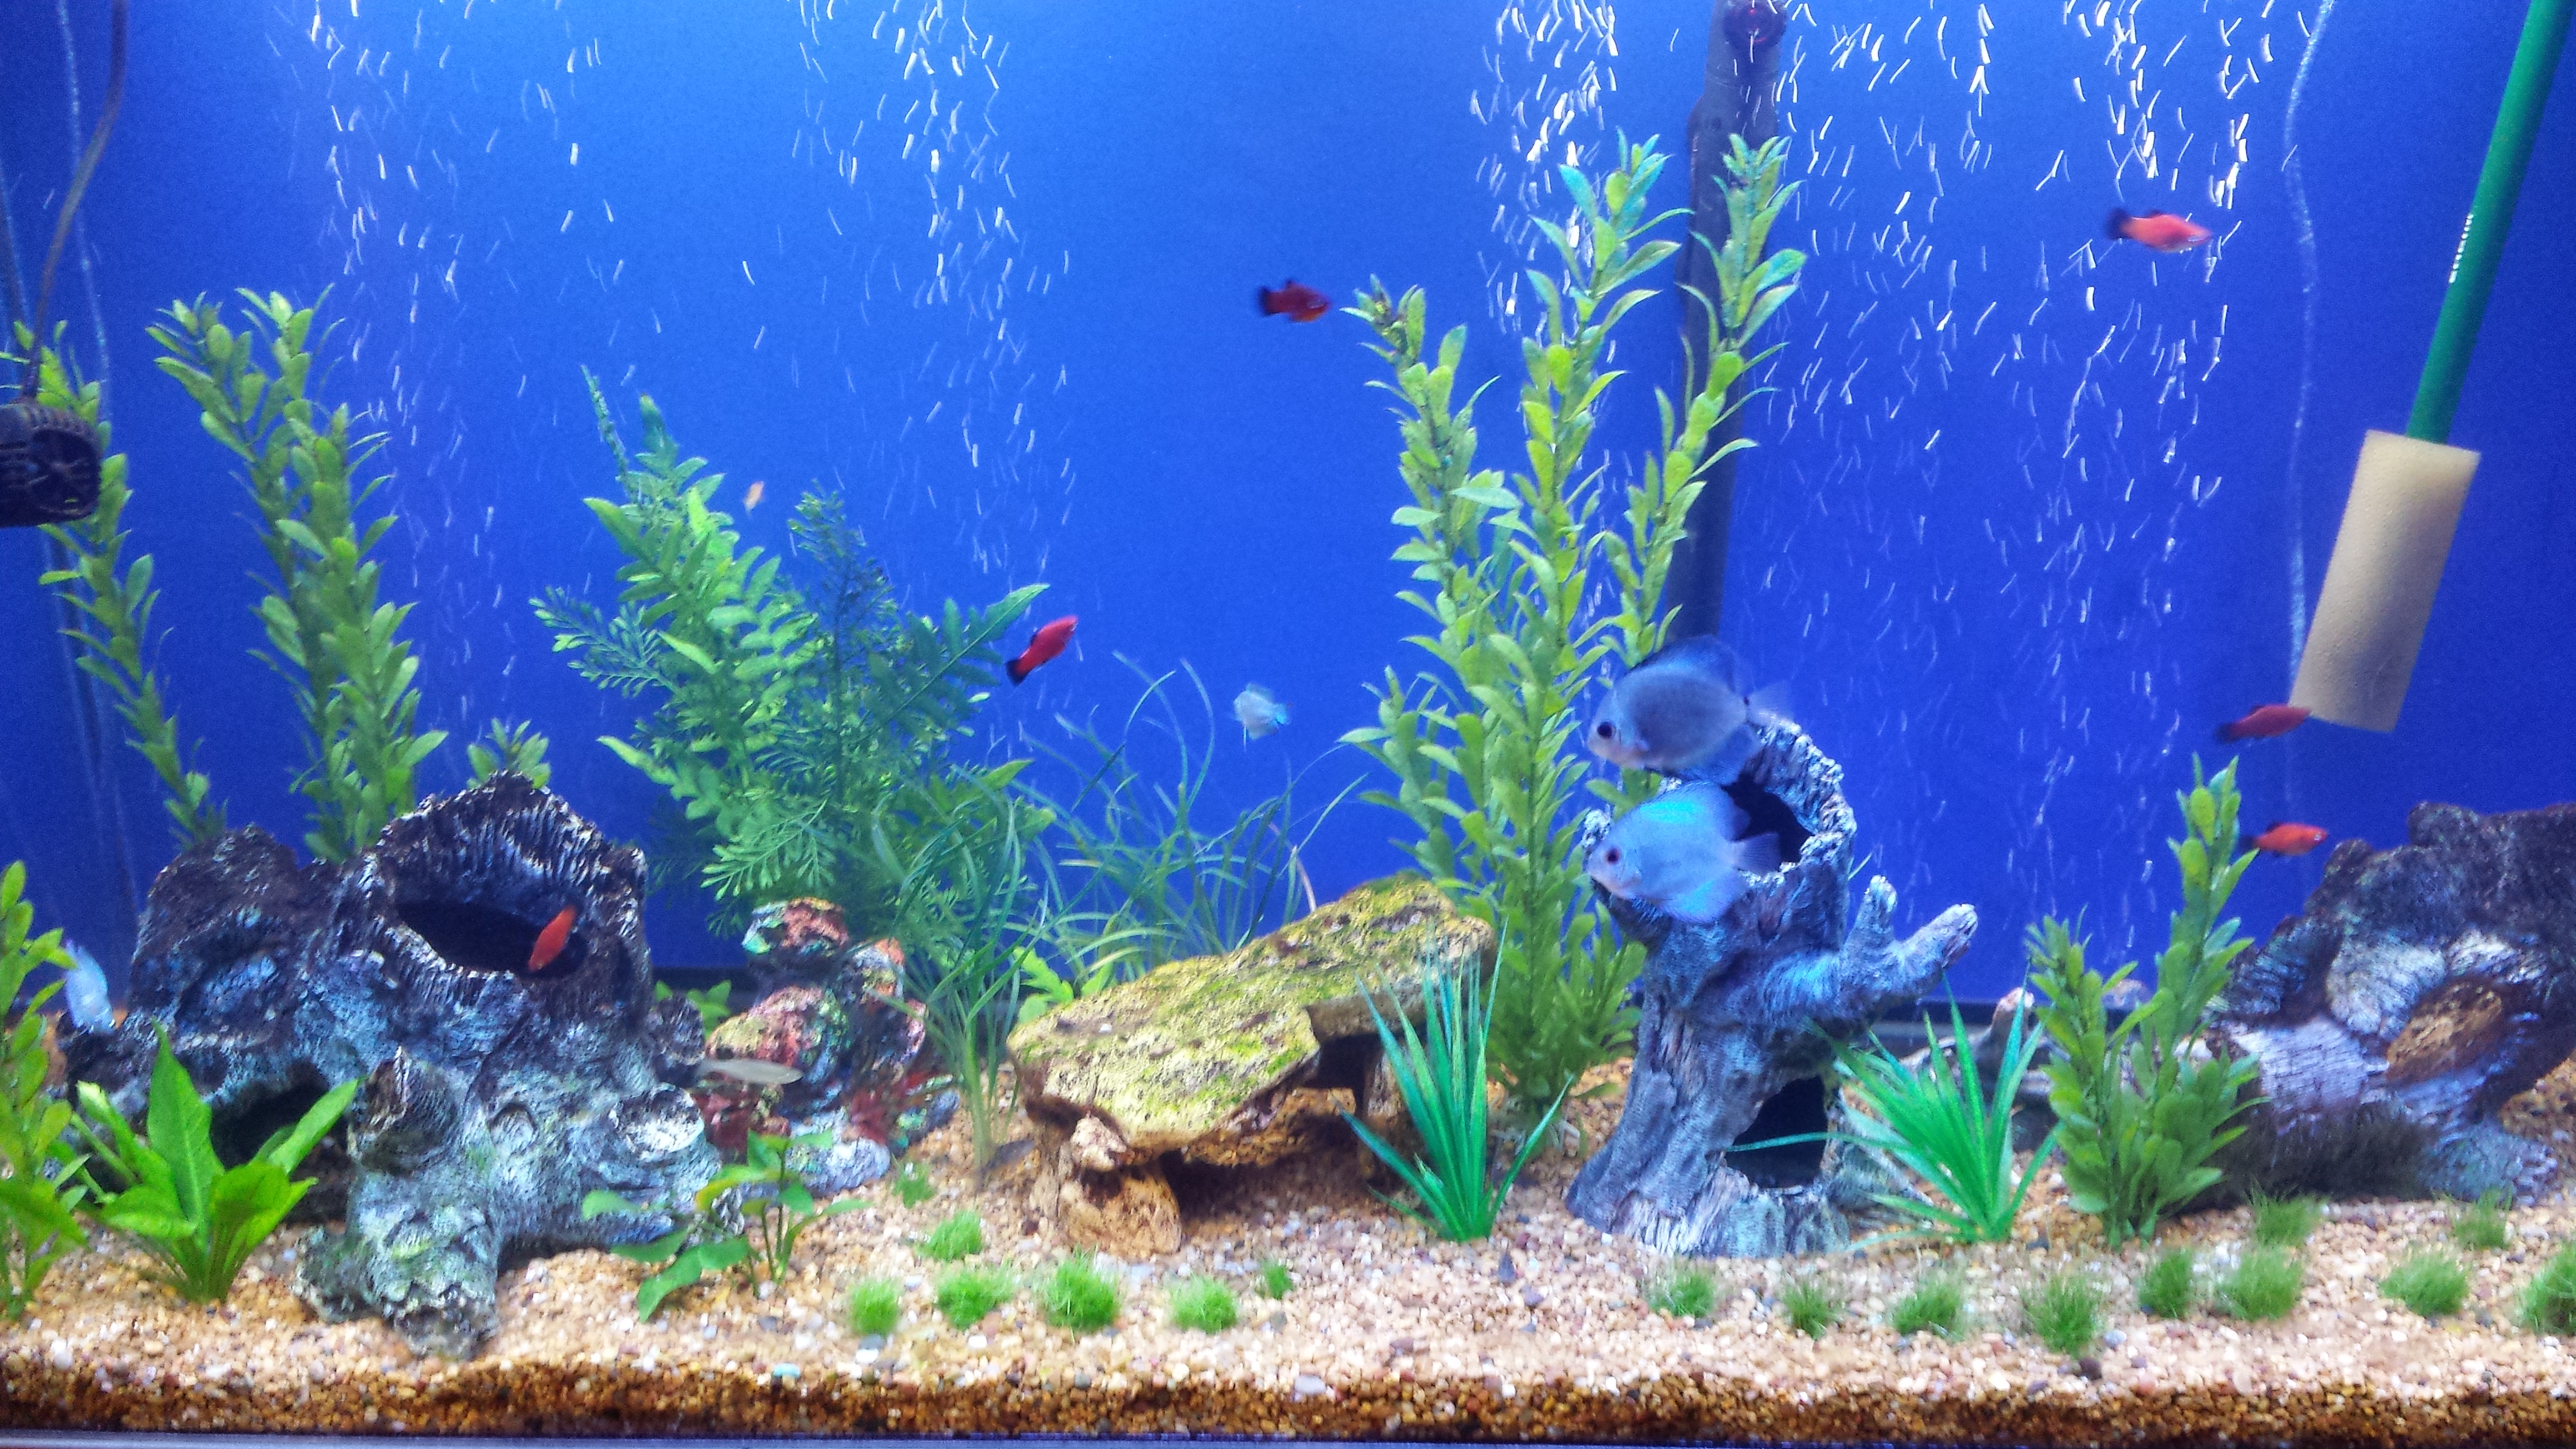 acquario hd wallpaper,acquario d'acqua dolce,acquario,pianta acquatica,biologia marina,illuminazione dell'acquario